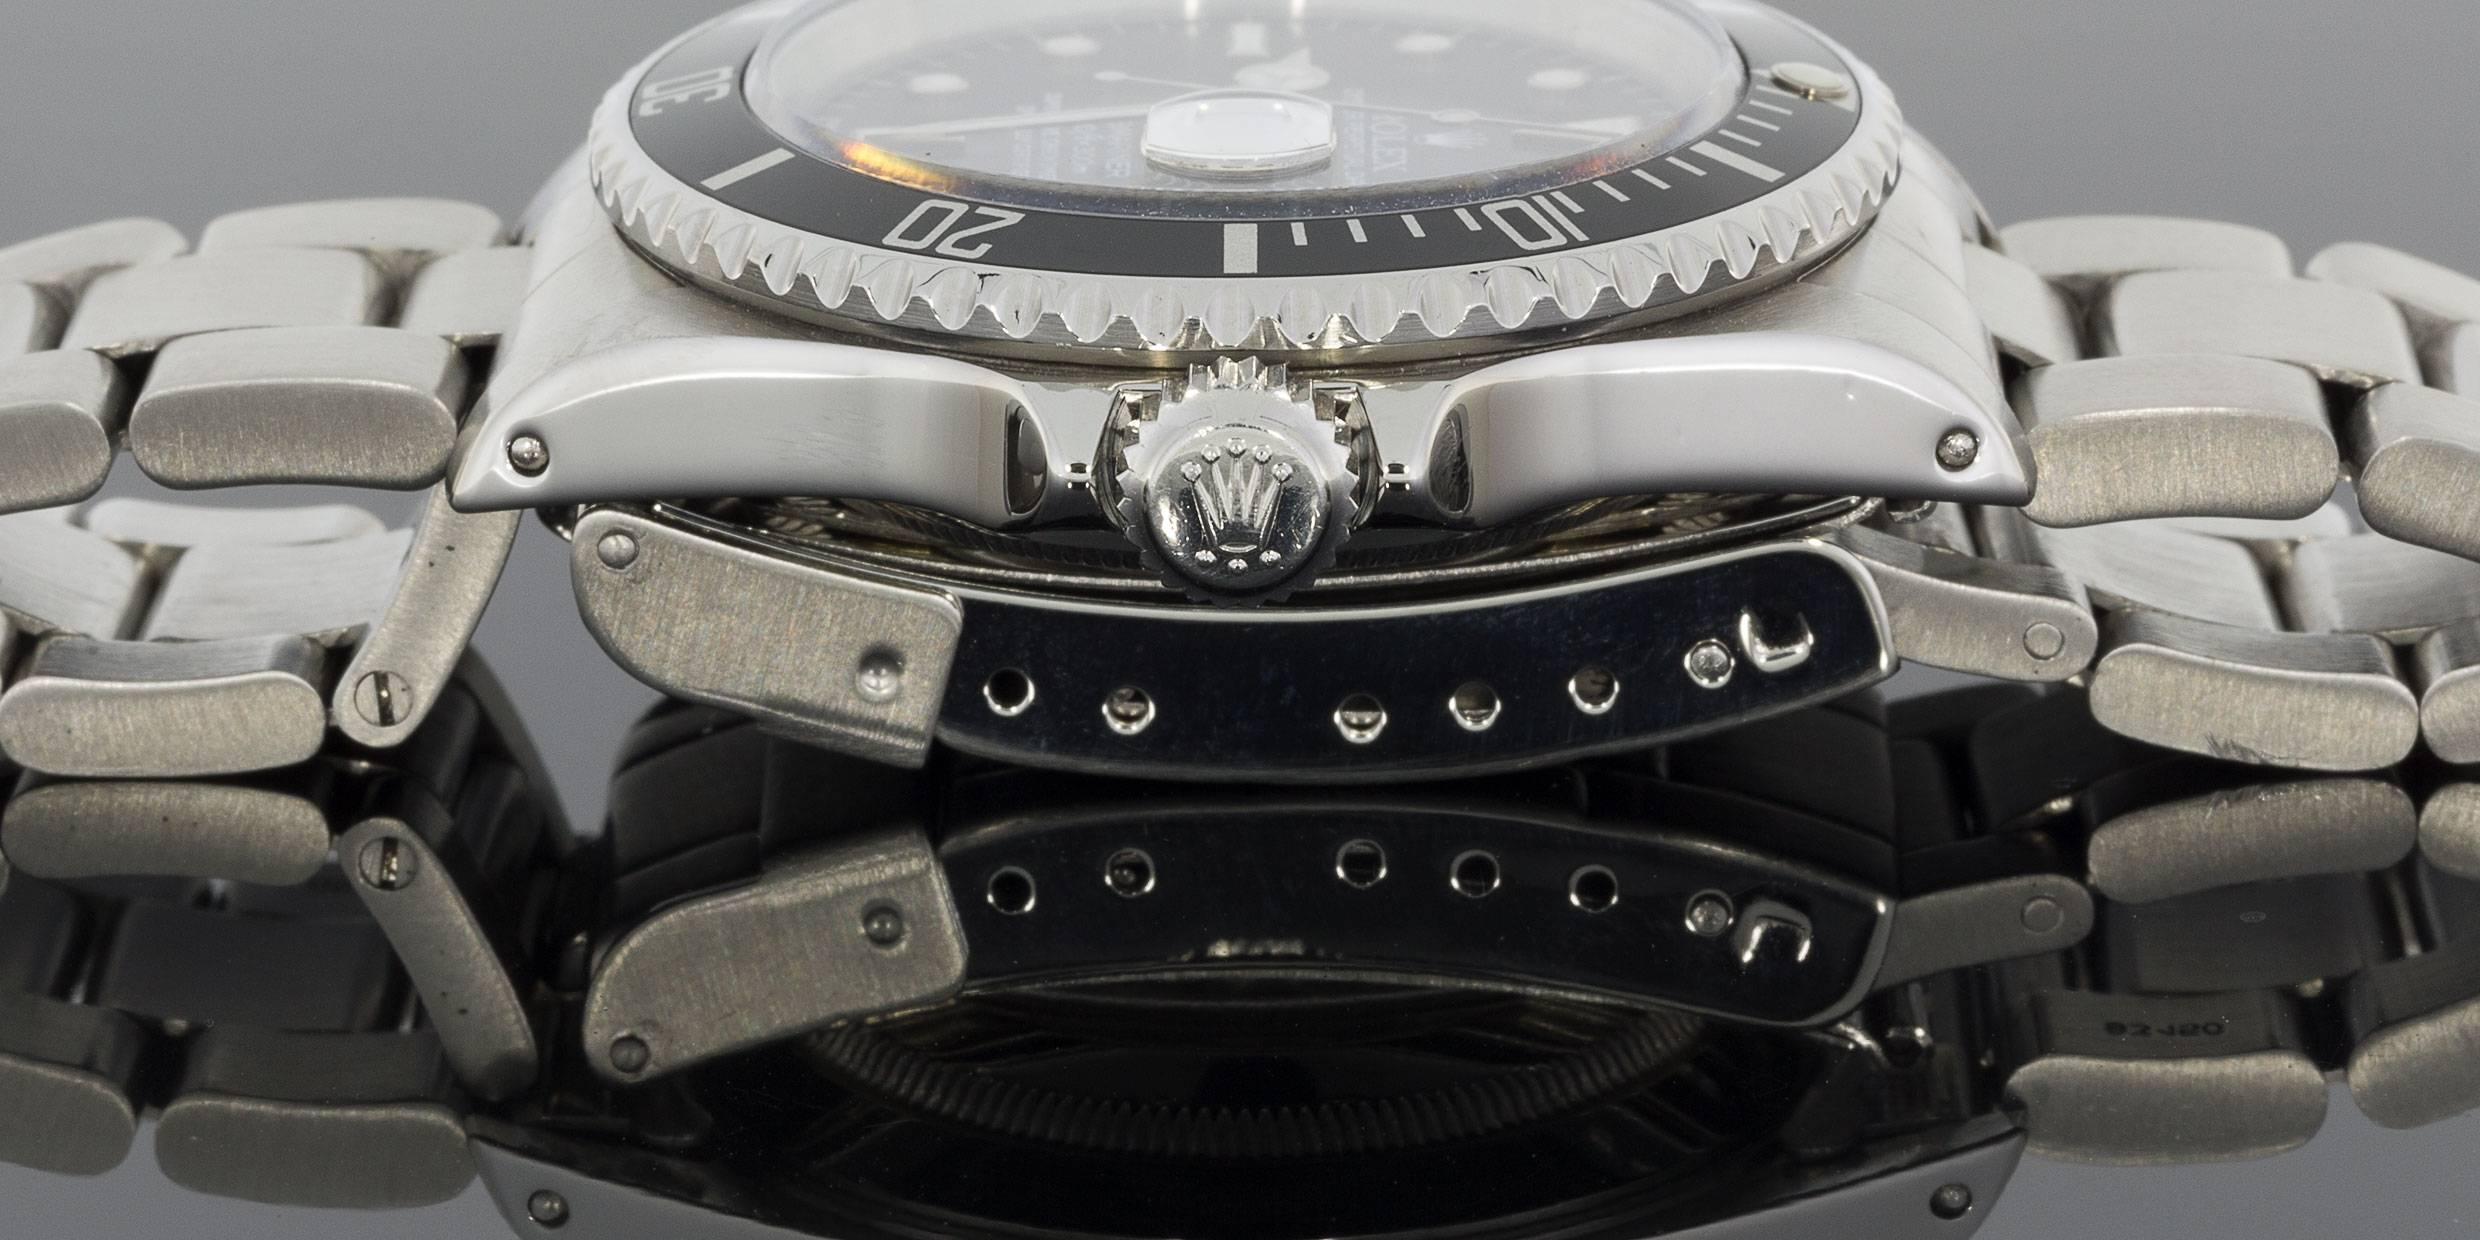 Rolex Stainless Steel Submariner Black Dial Wristwatch Ref #16610 1